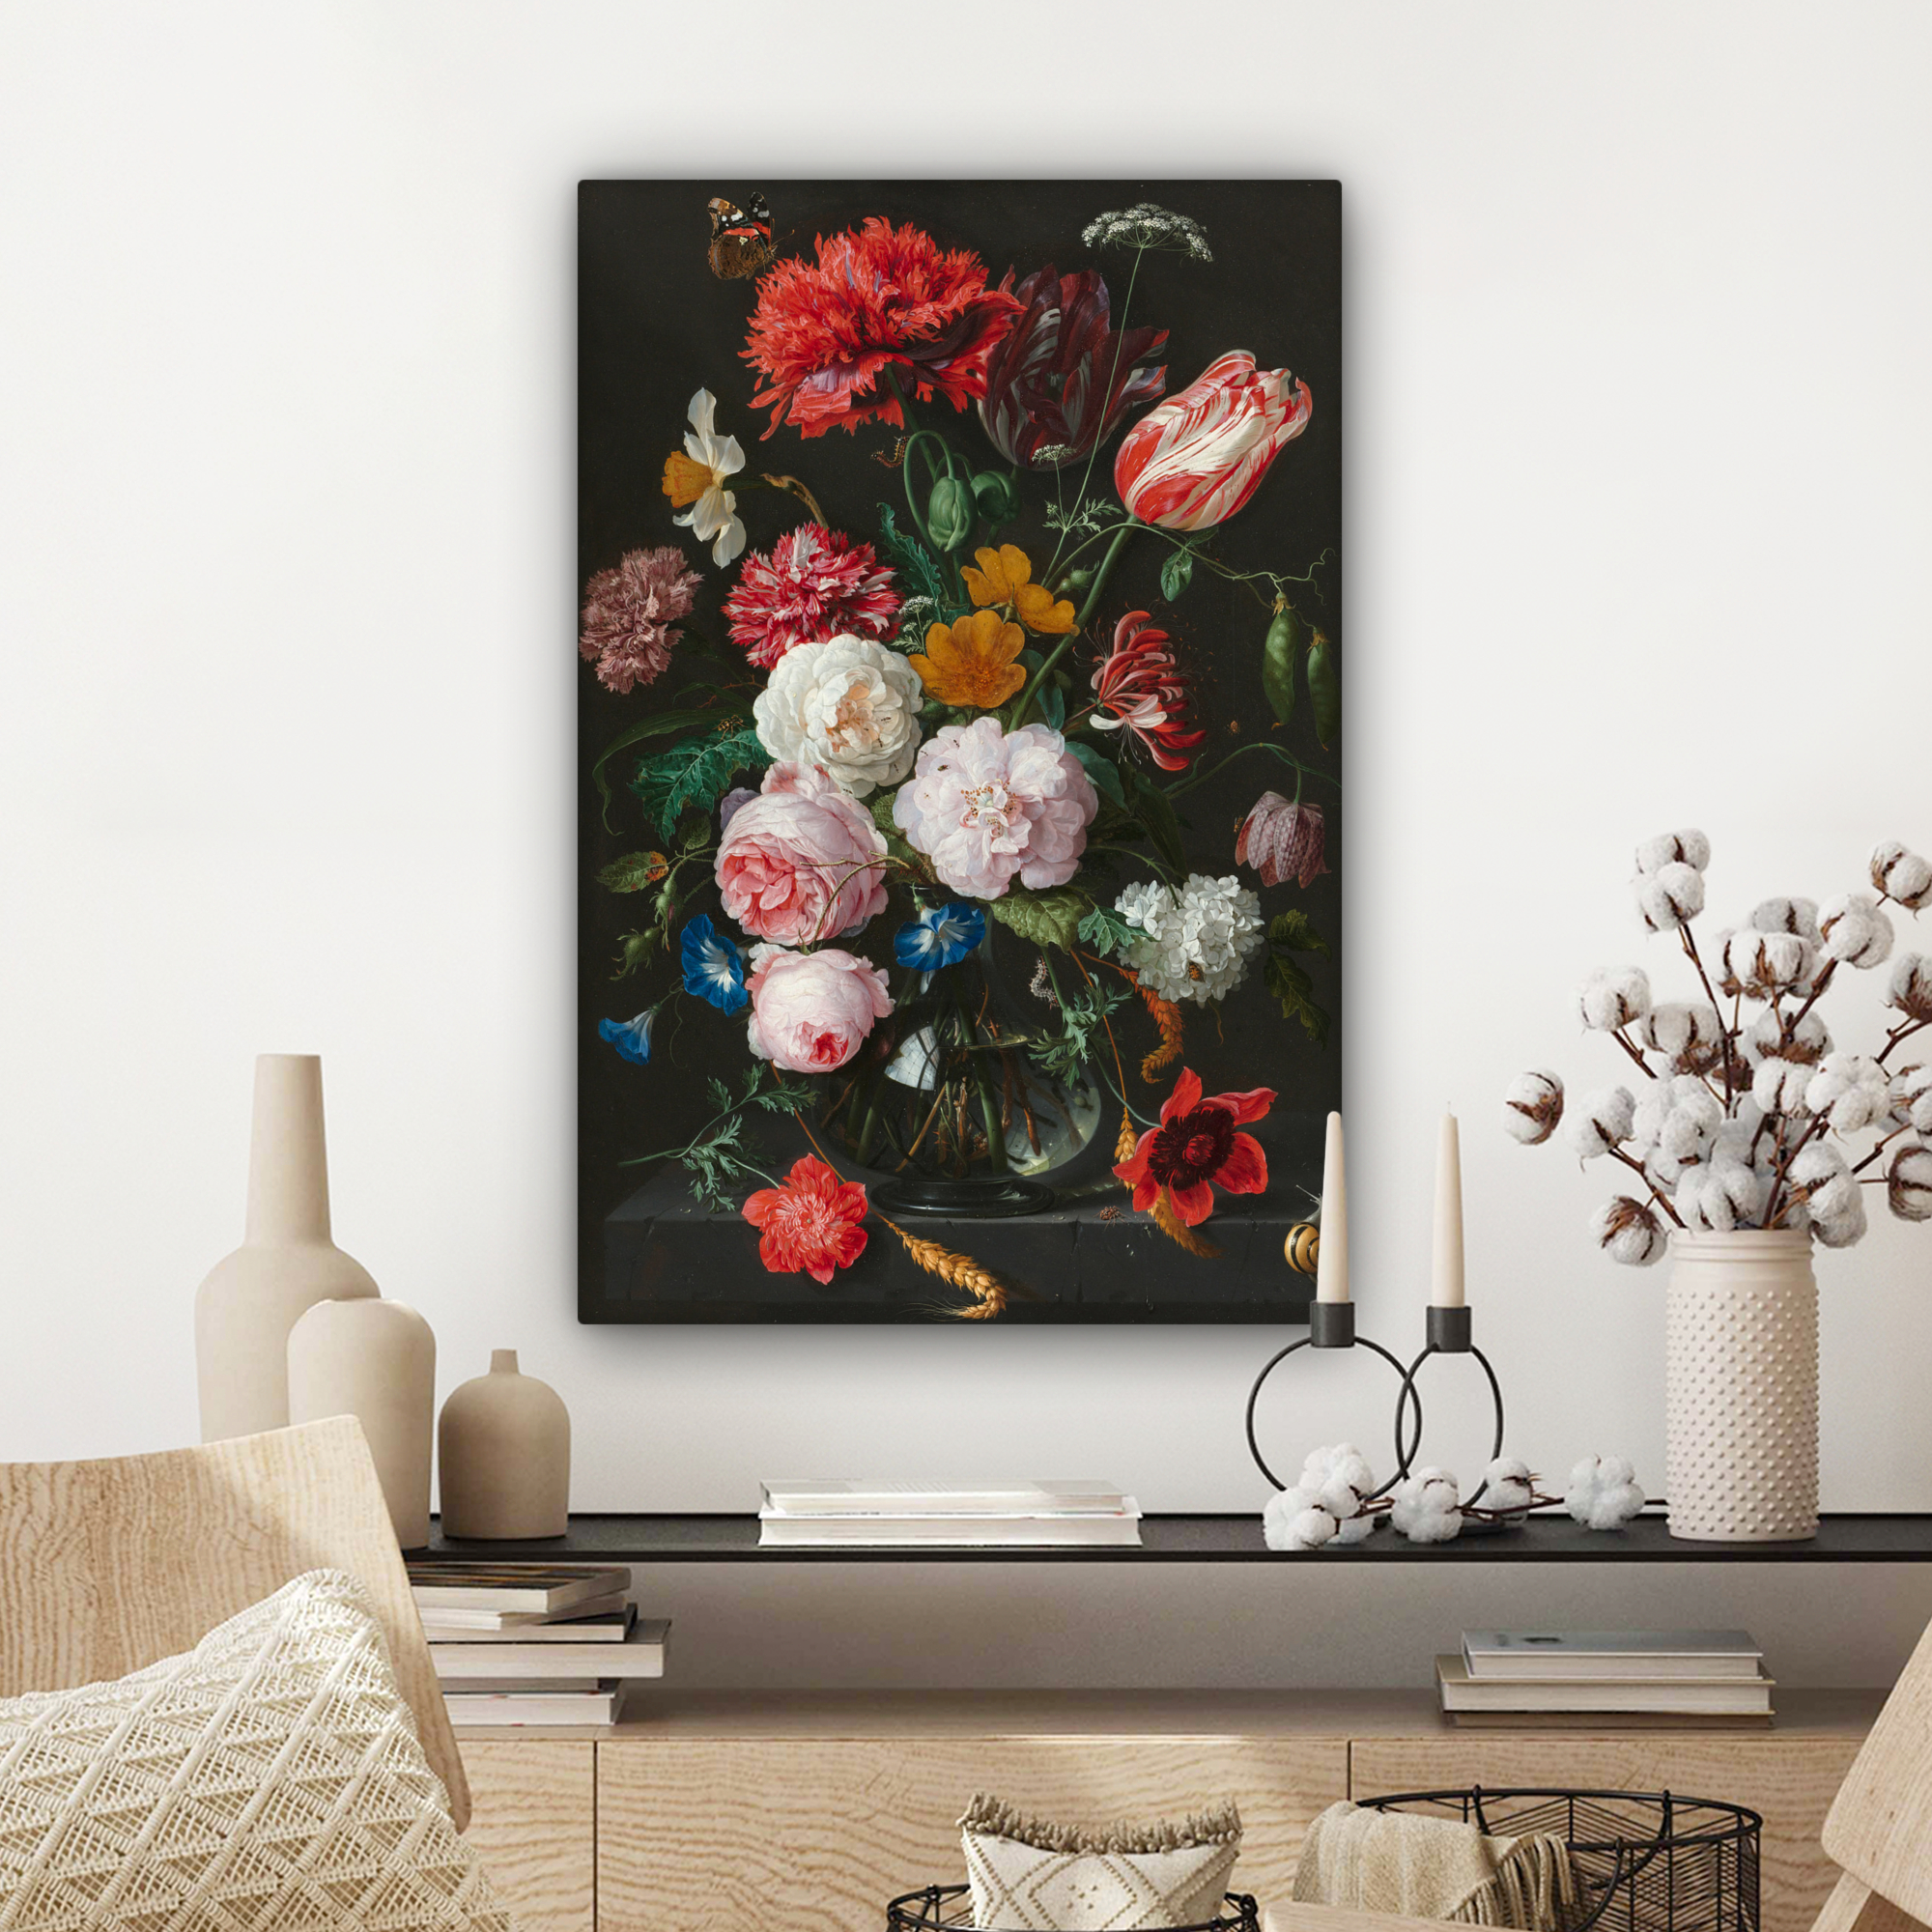 Canvas schilderij - Stilleven met bloemen in een glazen vaas - Schilderij van Jan Davidsz. de Heem-3